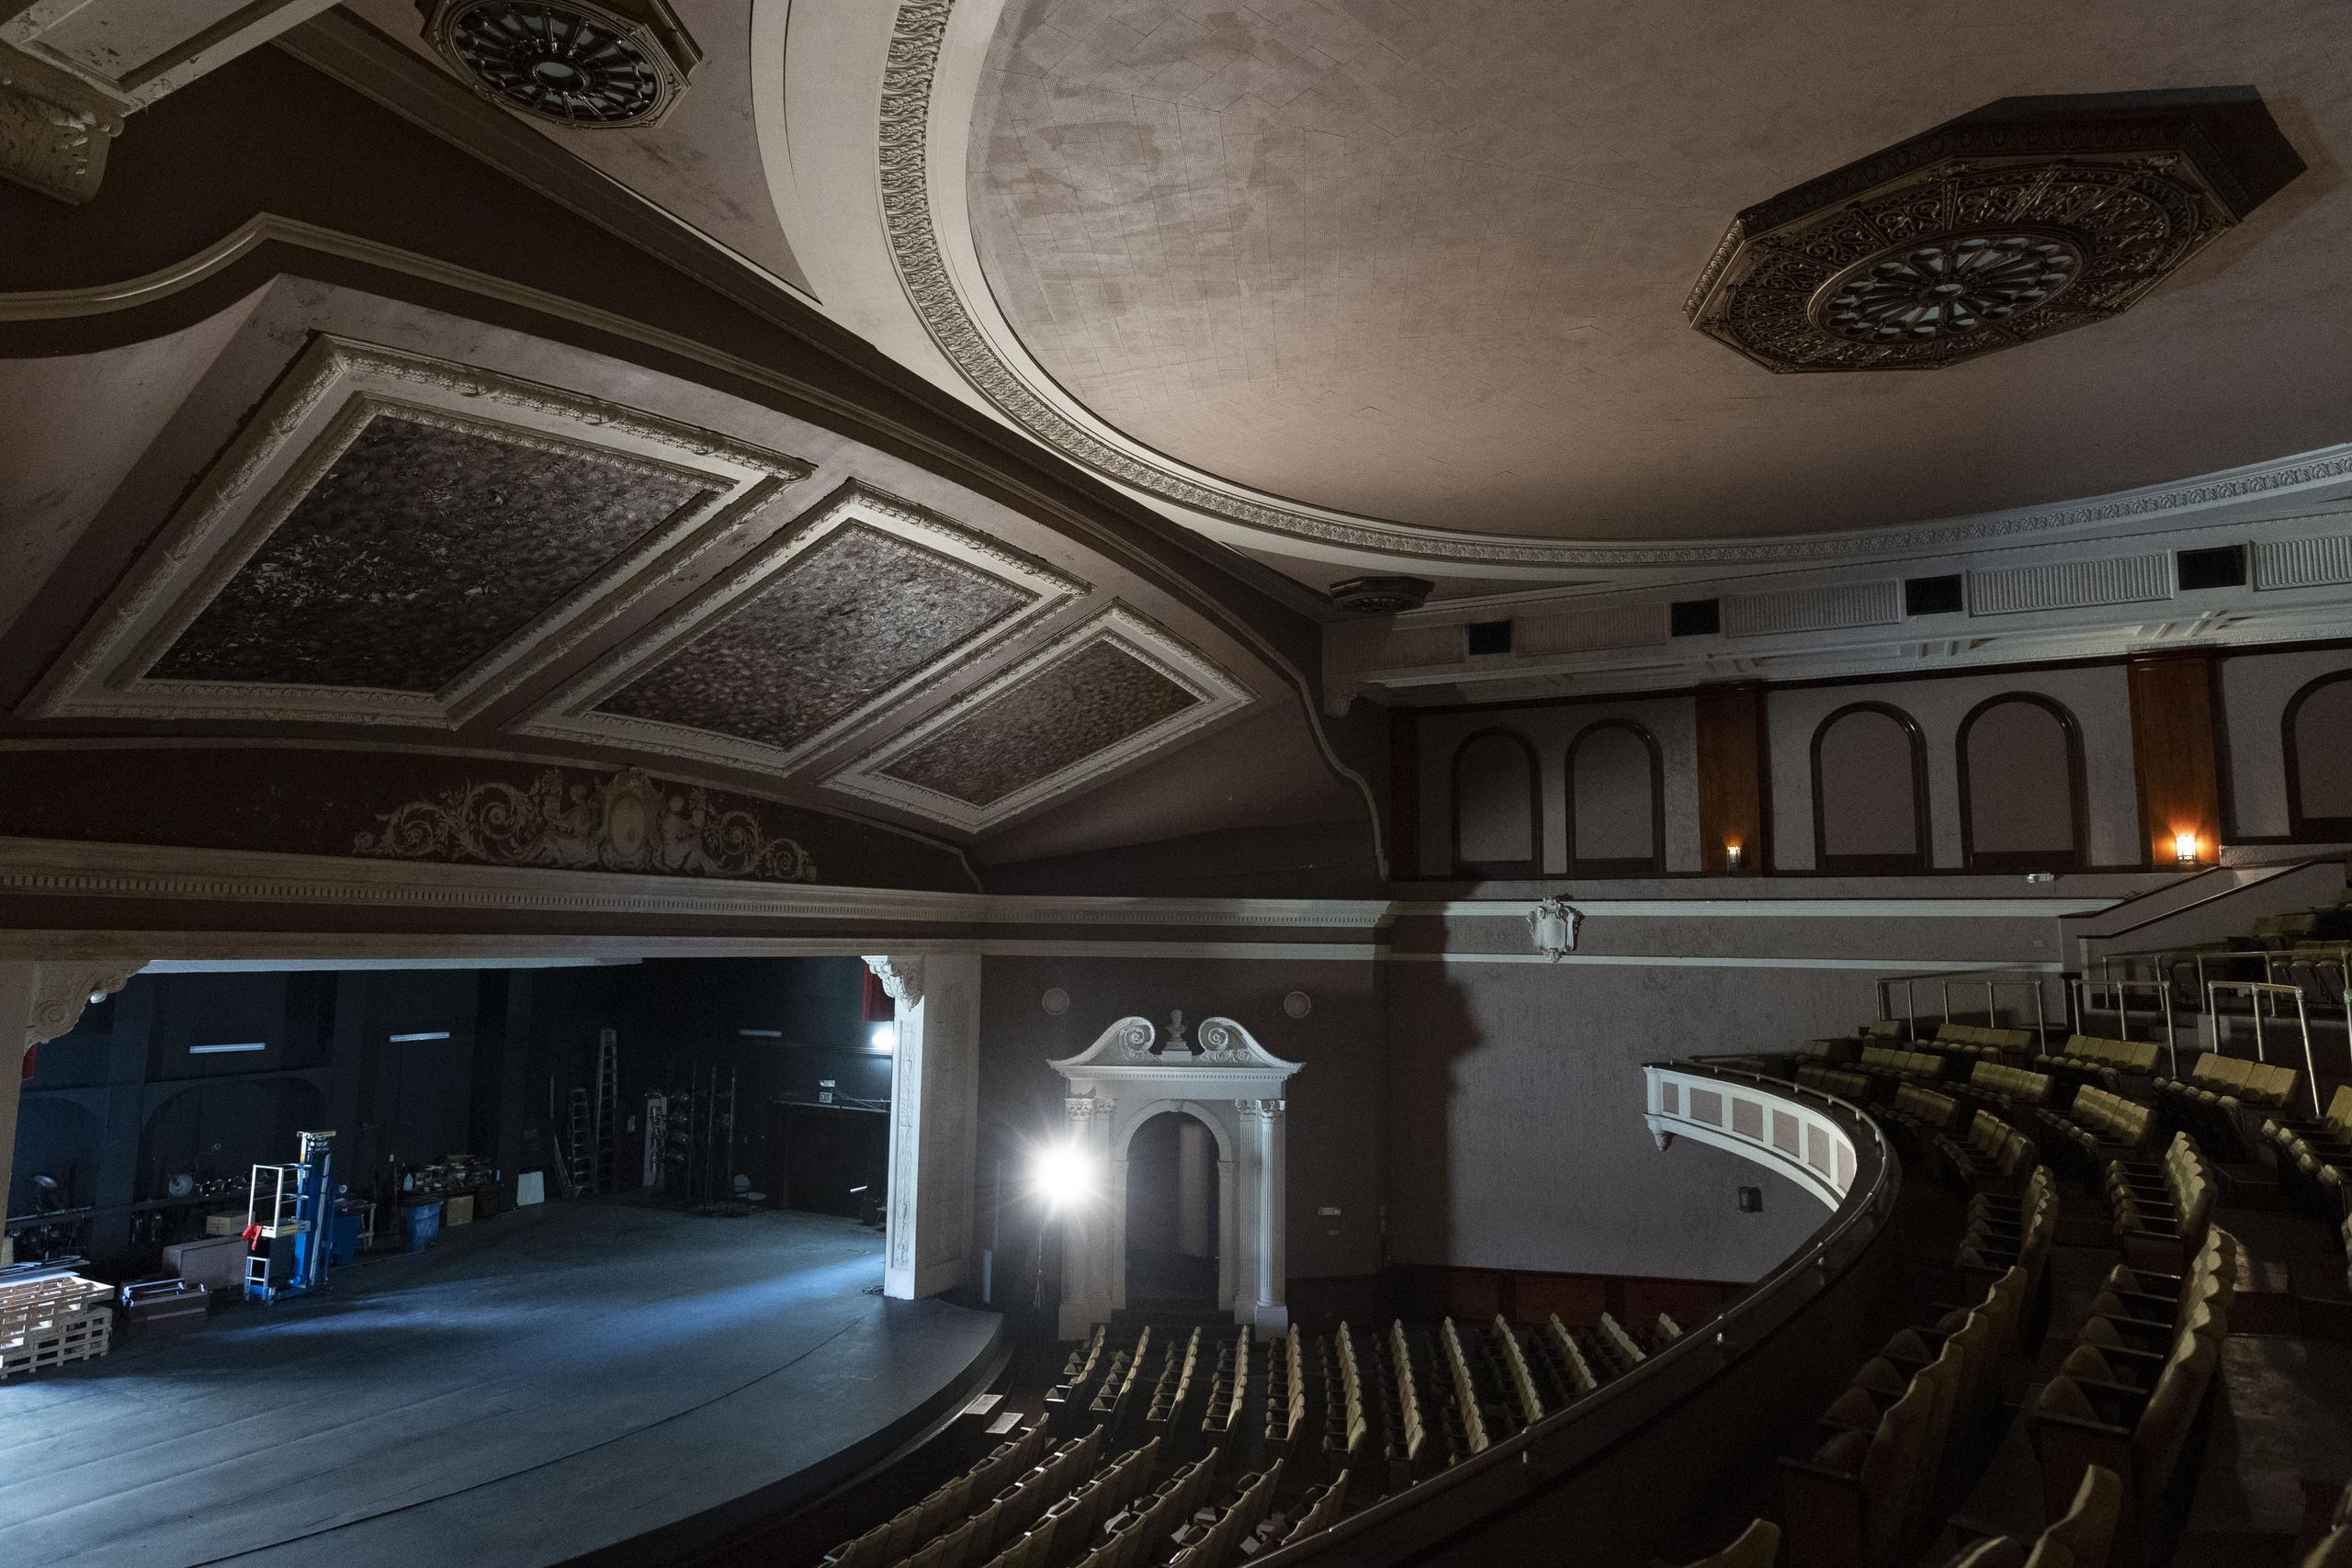 El teatro sufrió daños en el interior debido en su mayoría a las filtraciones de agua causadas por el huracán María (2017).